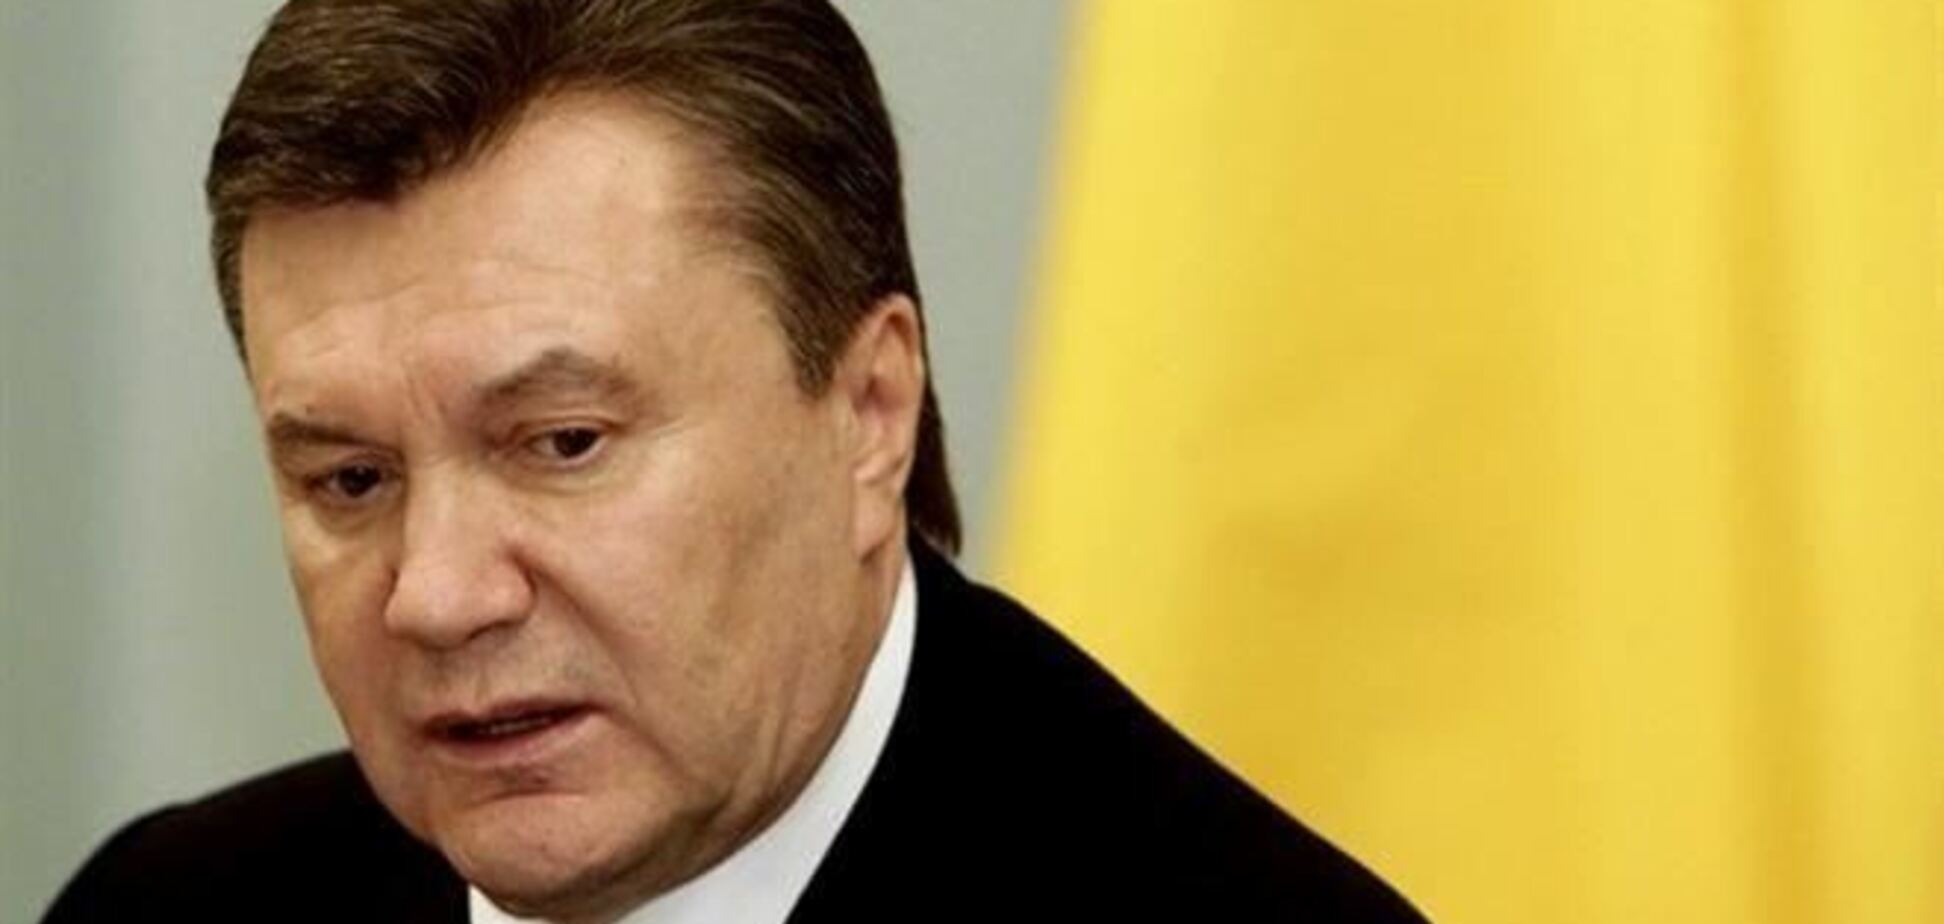 Встреча Януковича с главами МИД Польши, Германии и Франции приостановлена - журналист